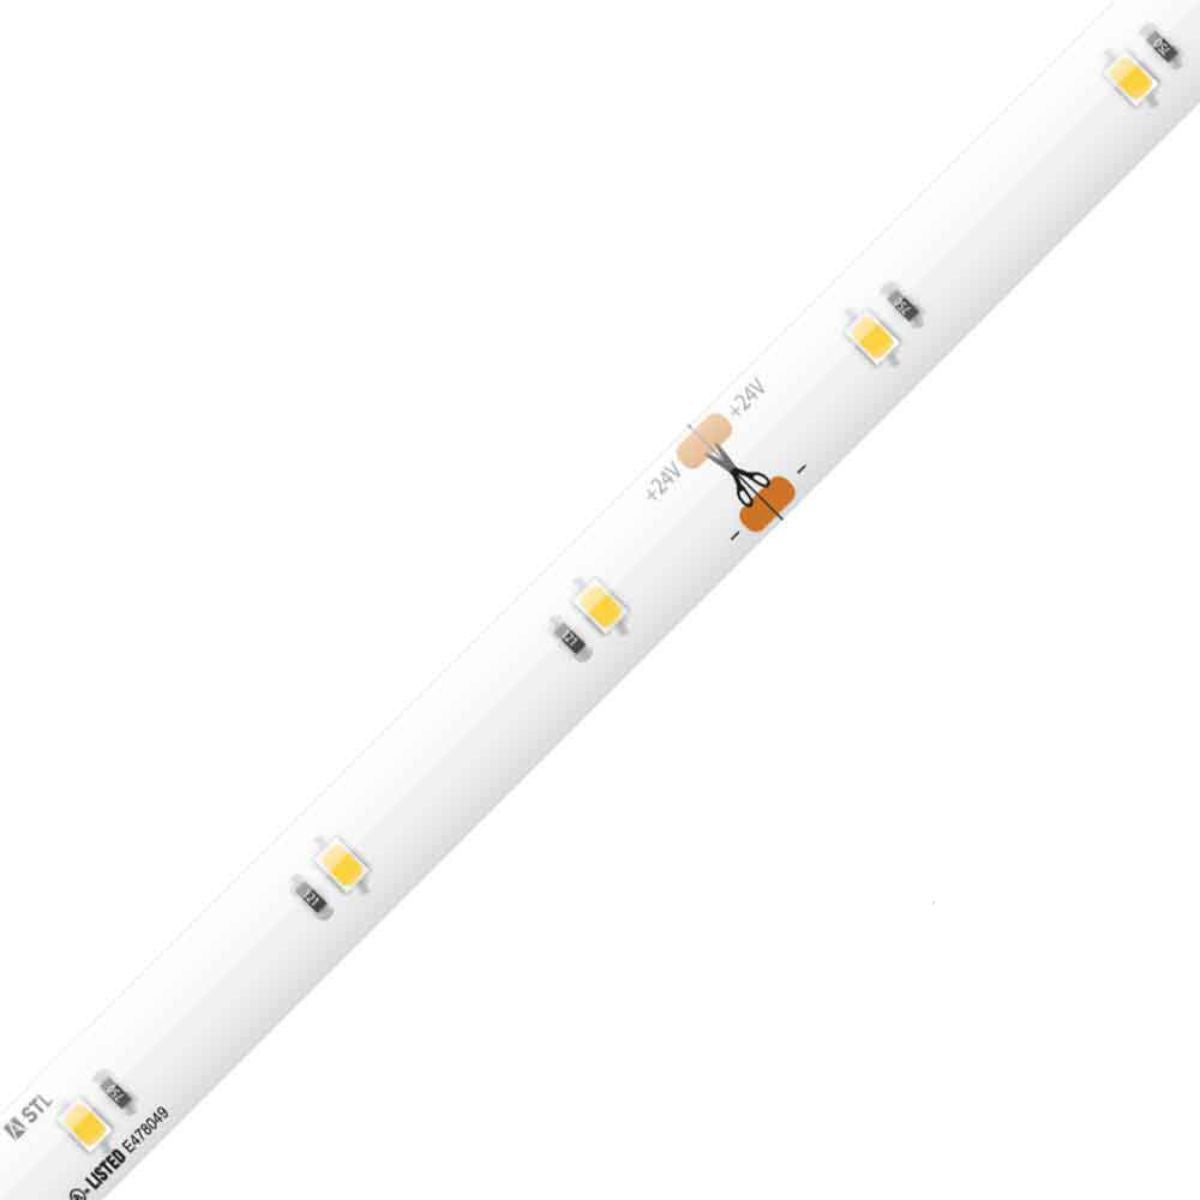 Trulux Standard Grade LED Tape Light, 16.4Ft Reel, 155 Lumens per Ft, 24V